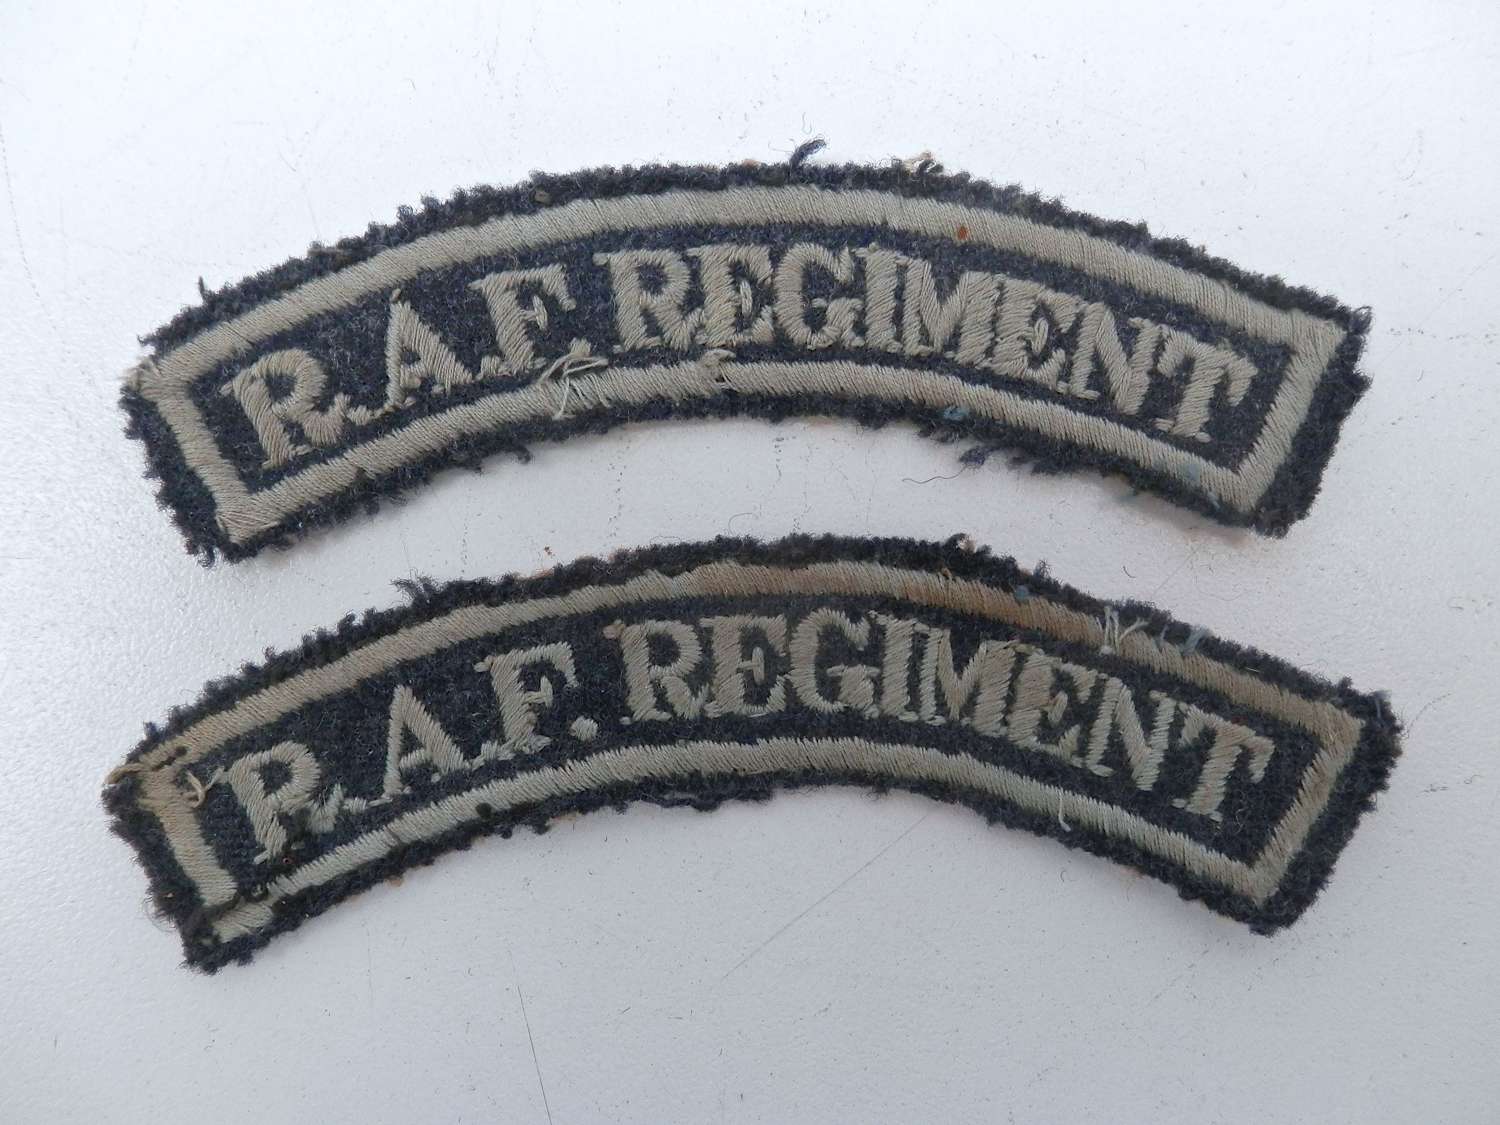 RAF regiment shoulder titles